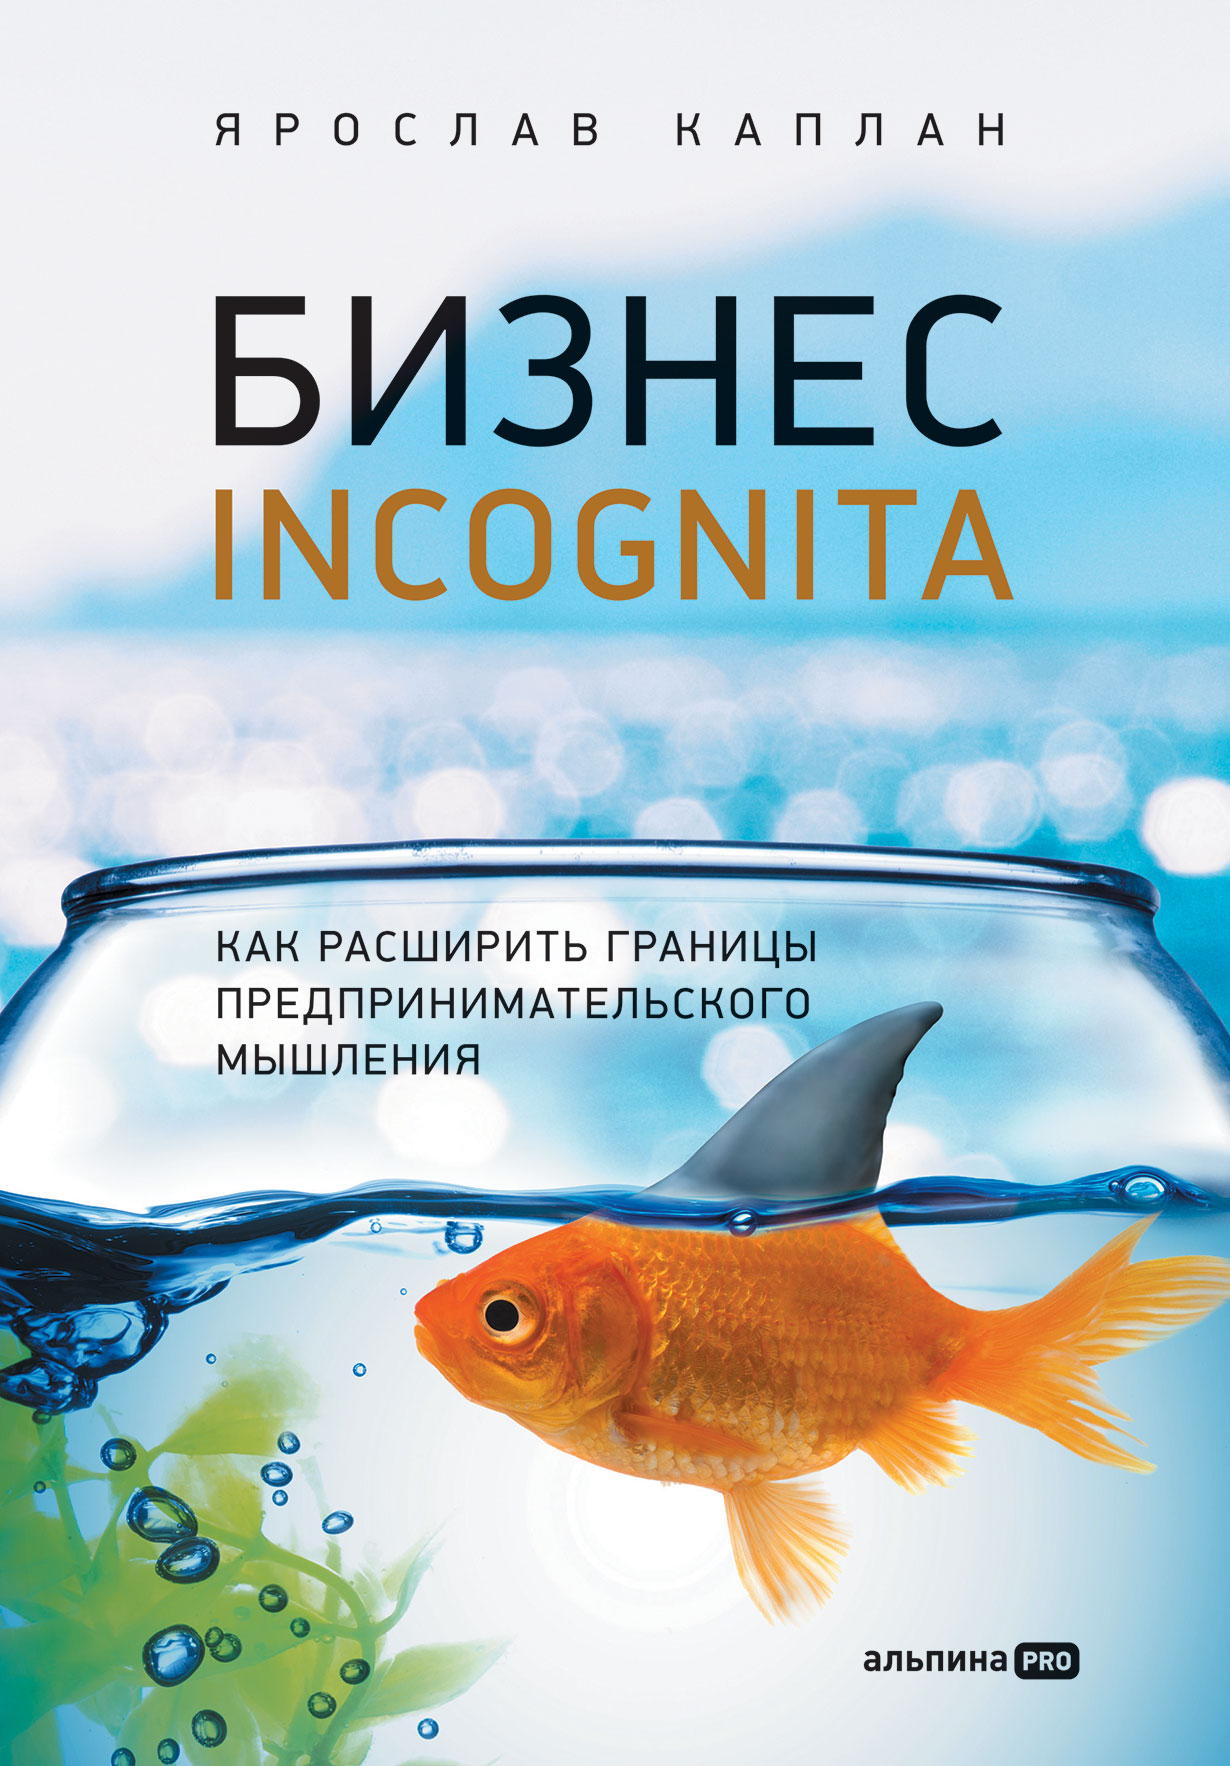 Обложка книги Ярослава Каплана «Бизнес incognita. Как расширить границы предпринимательского мышления»